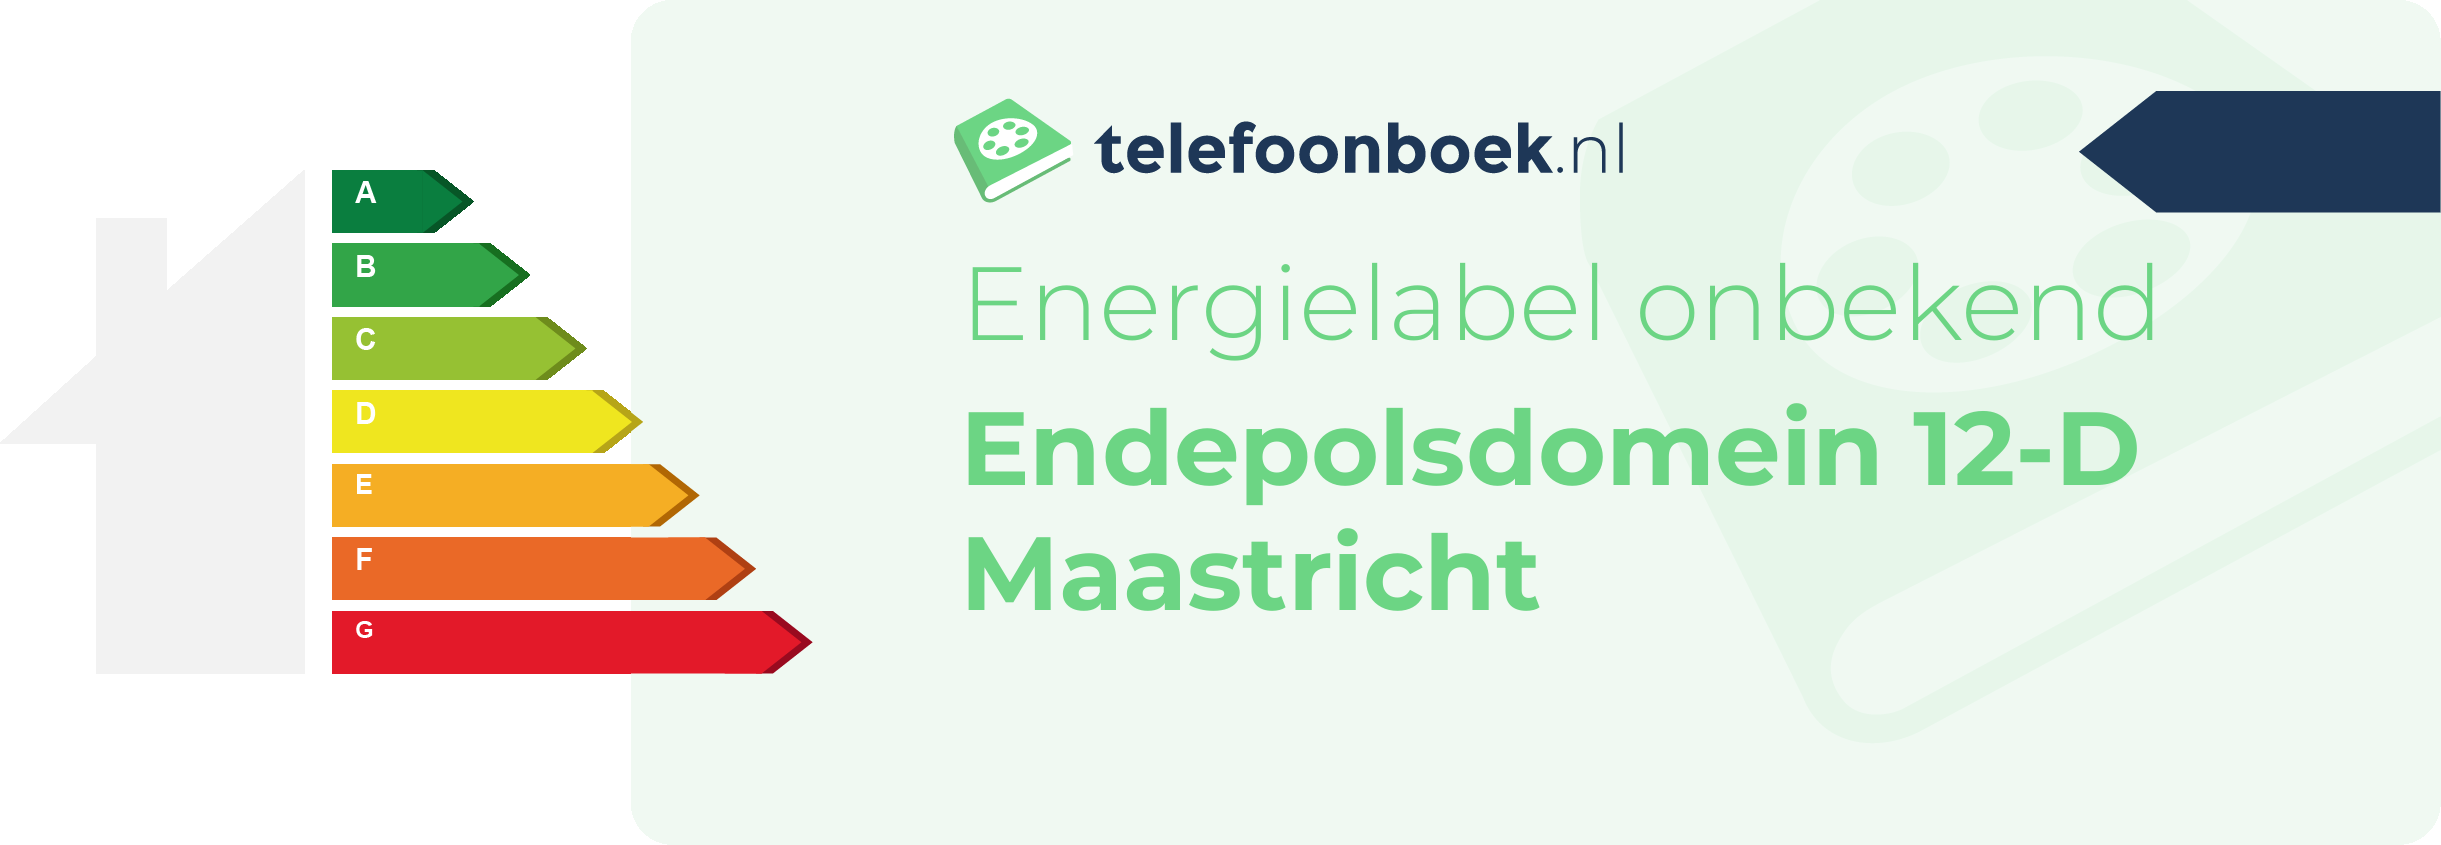 Energielabel Endepolsdomein 12-D Maastricht